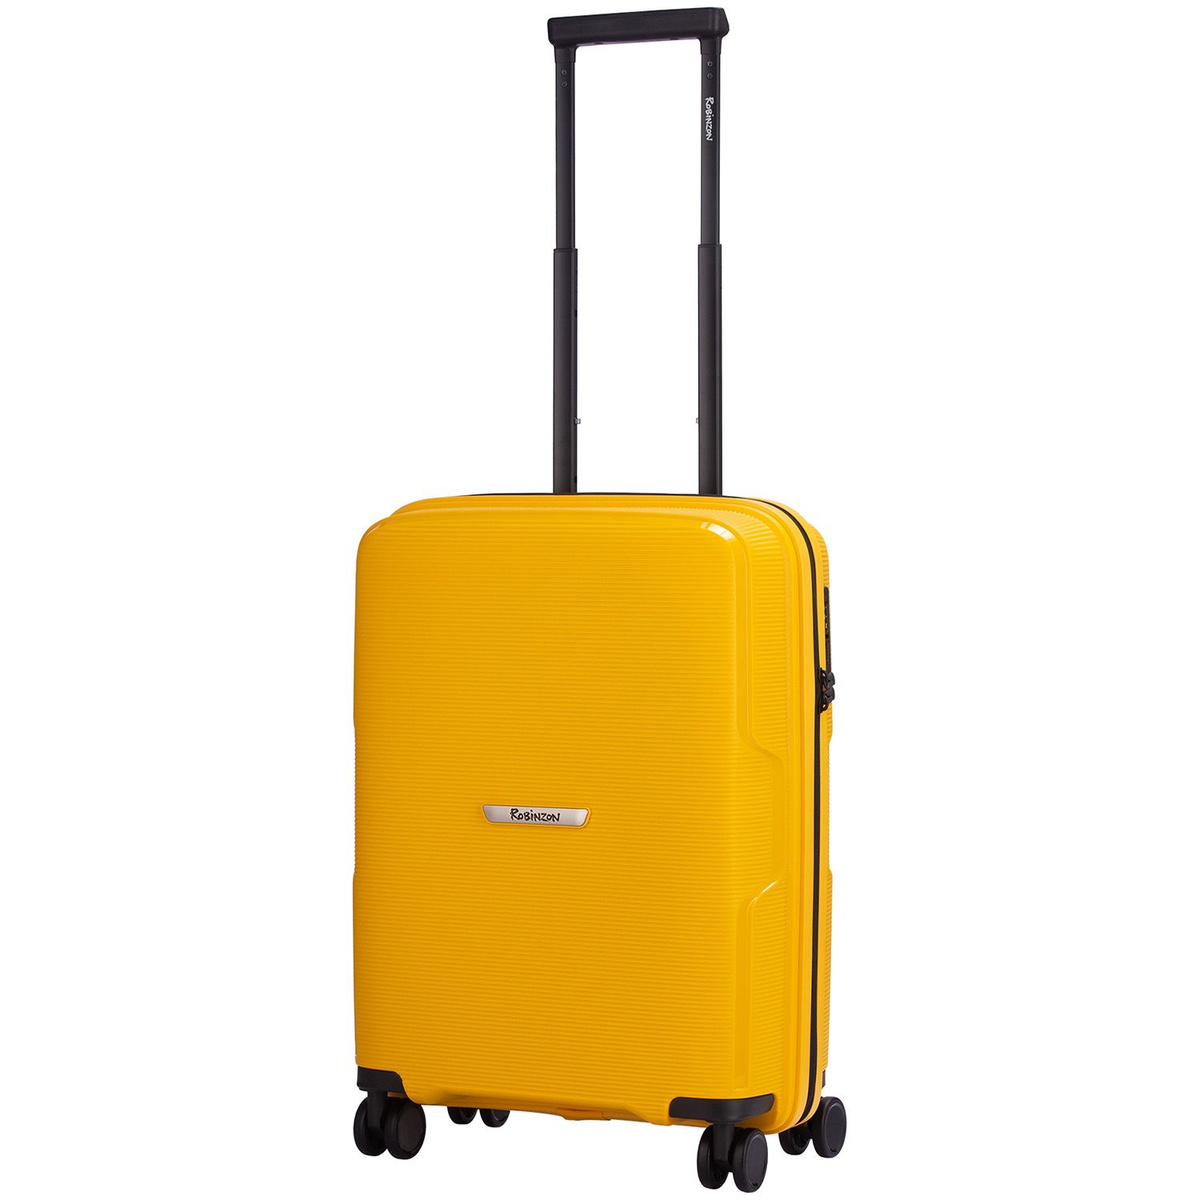 Размер чемодана: 40x55x20 см Вес чемодана: всего 2,3 кг Объём чемодана: 37 л